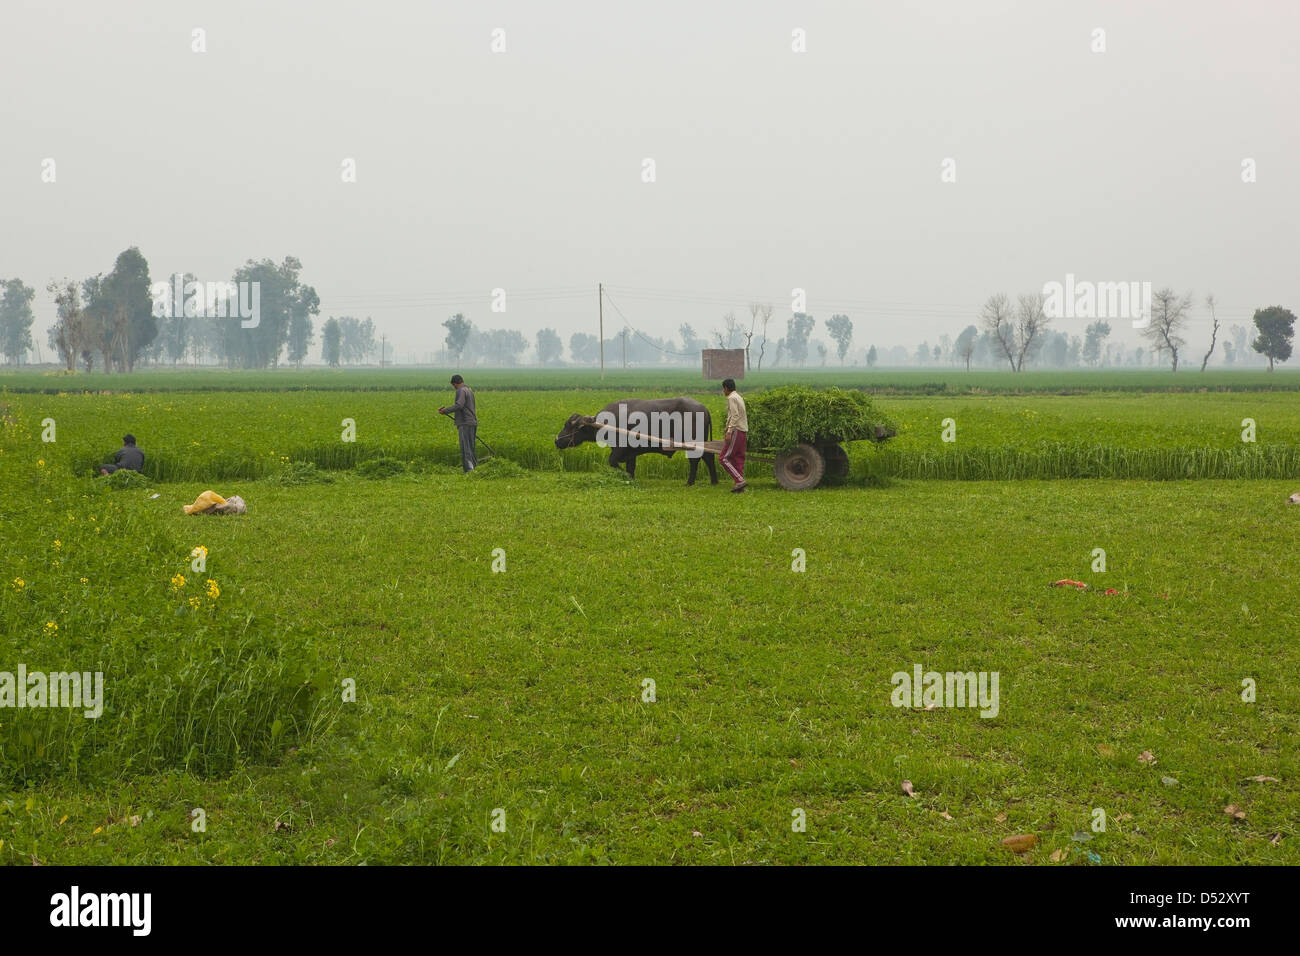 Rassemblement des travailleurs agricoles les cultures fourragères avec un panier de bétail sur un matin brumeux dans les régions rurales de la province du Punjab, en Inde. Banque D'Images